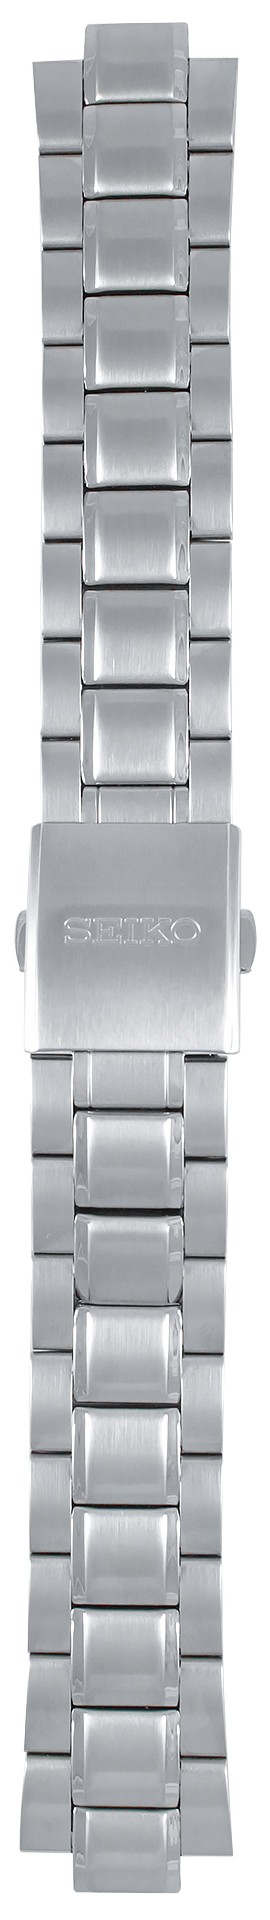 Браслет для часов Seiko 7N42-0FH0 Браслет наручных часов металлический -  купить в интернет-магазине .